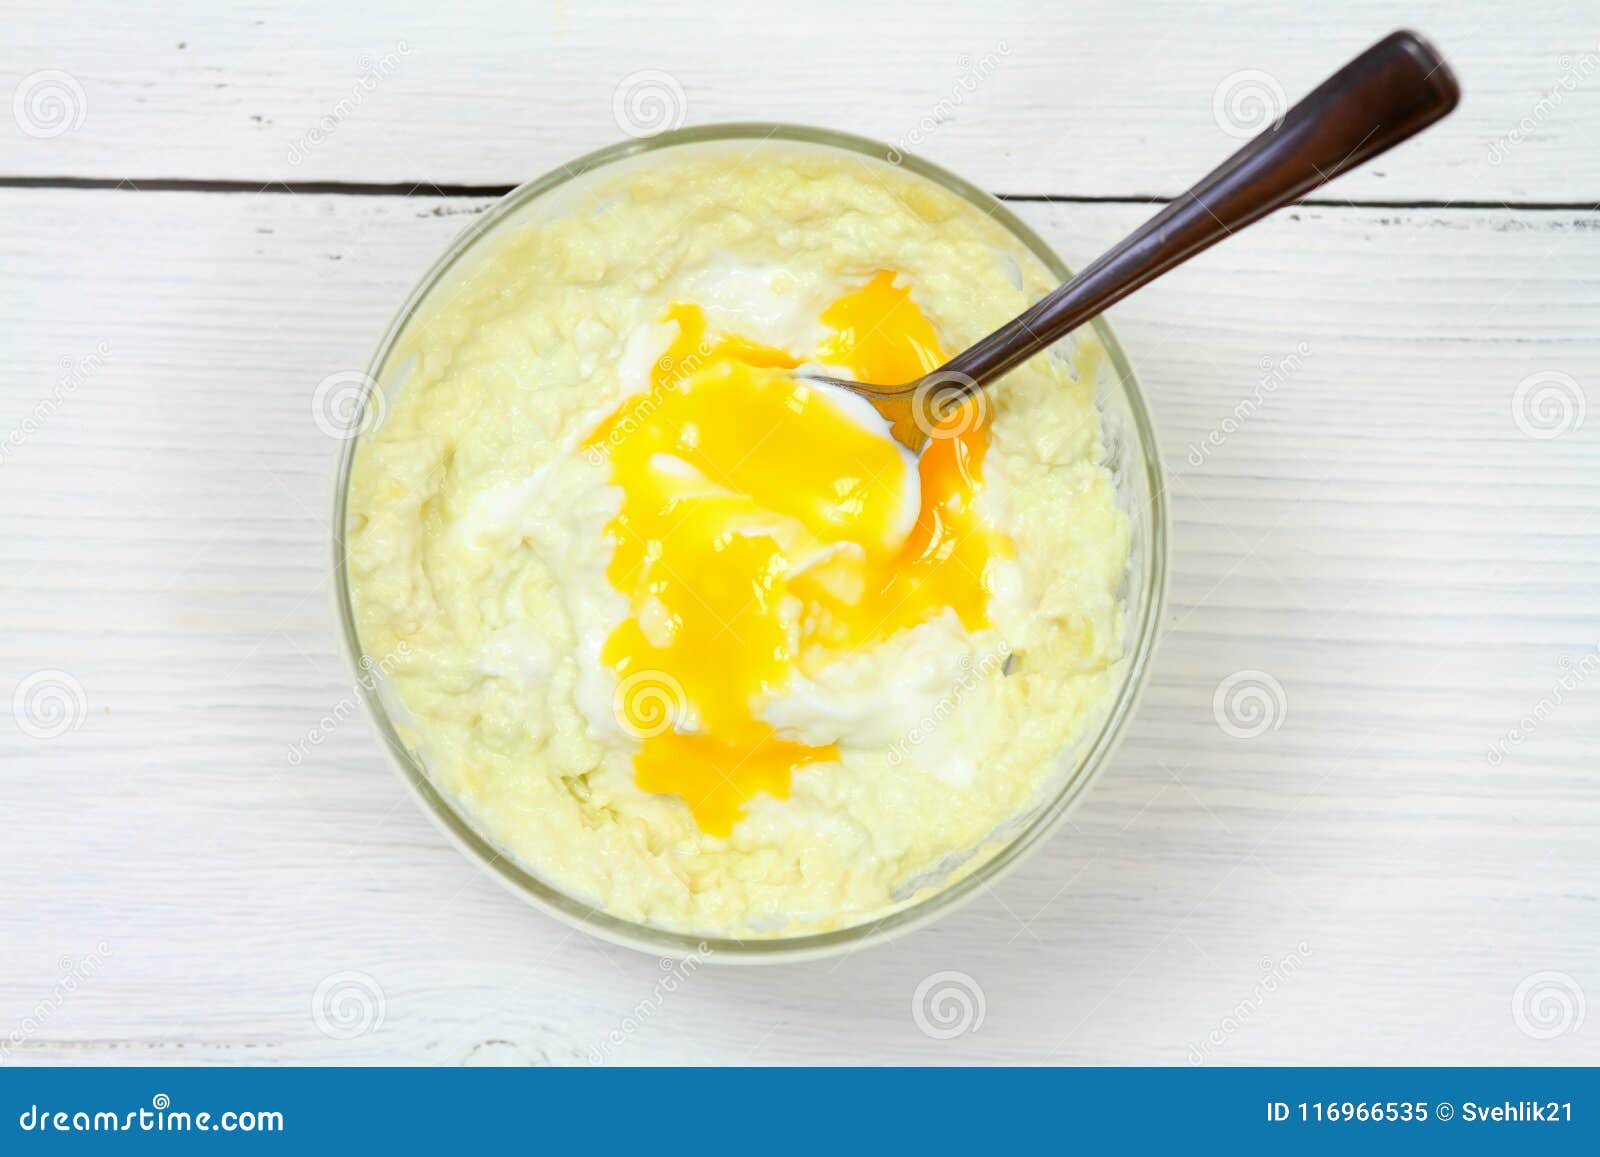 Avocado, Olive Oil, Yogurt and Egg Yolk for Hair Mask Stock Image - Image  of mask, background: 116966535